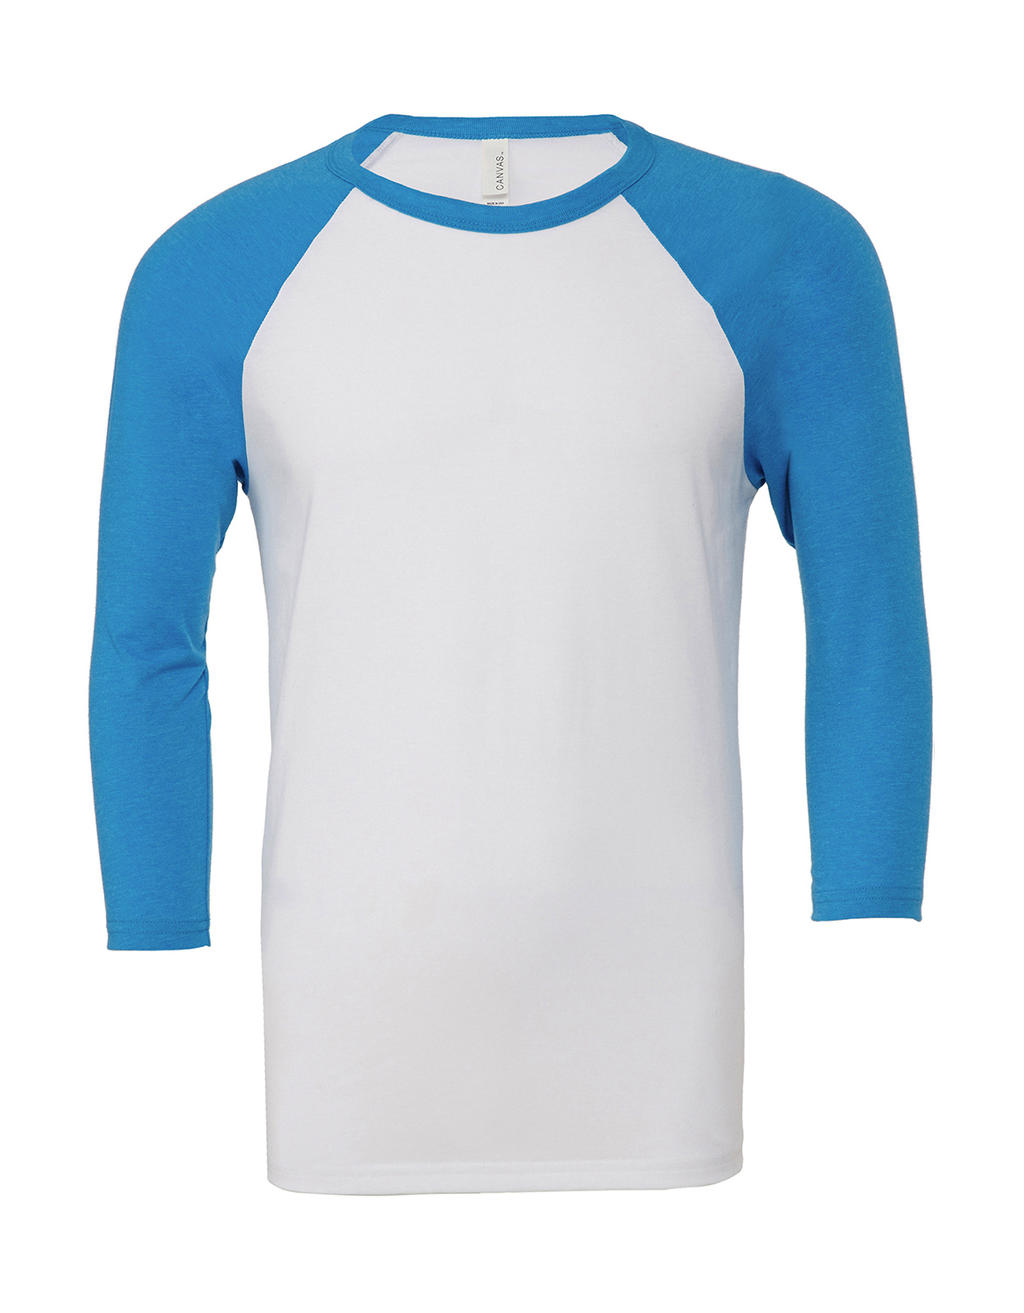  Unisex 3/4 Sleeve Baseball T-Shirt in Farbe White/Neon Blue